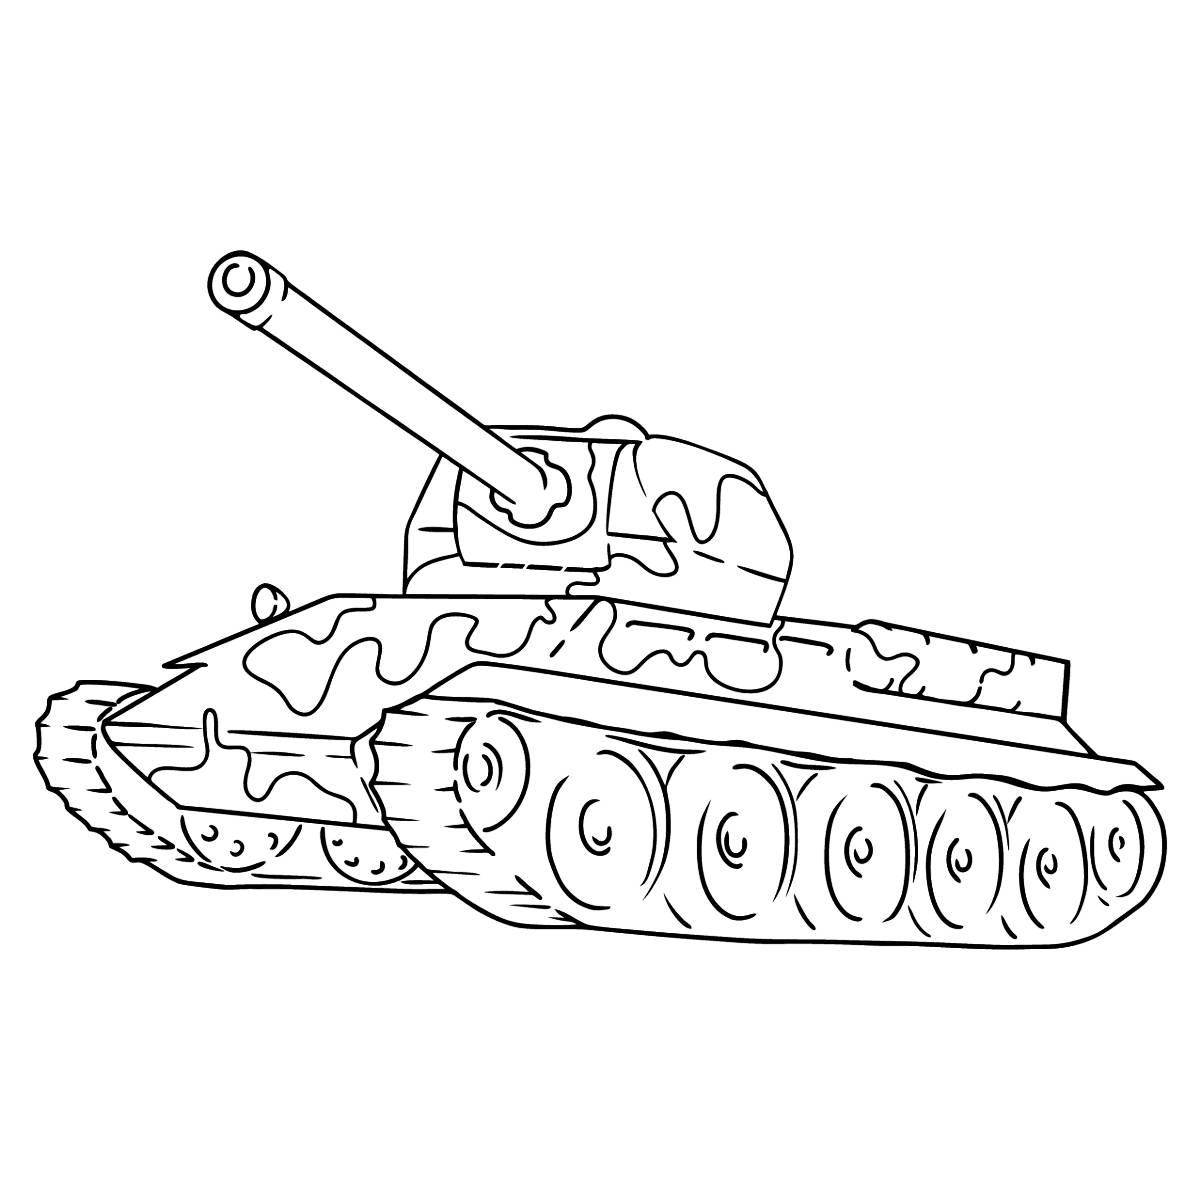 Блестяще оформленный танк со звездой